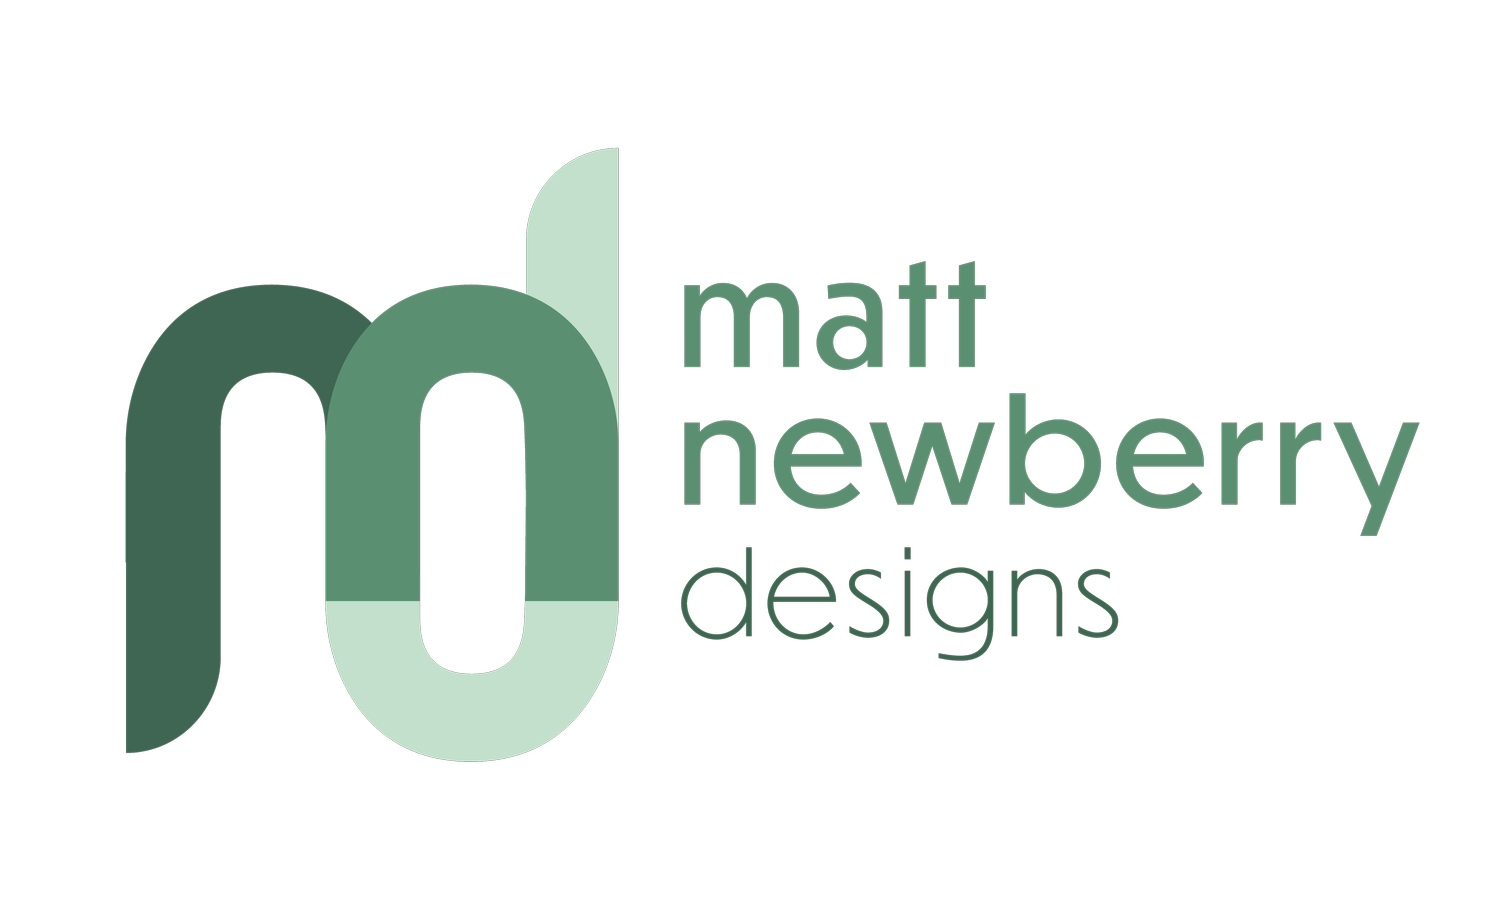 Matt Newberry Designs